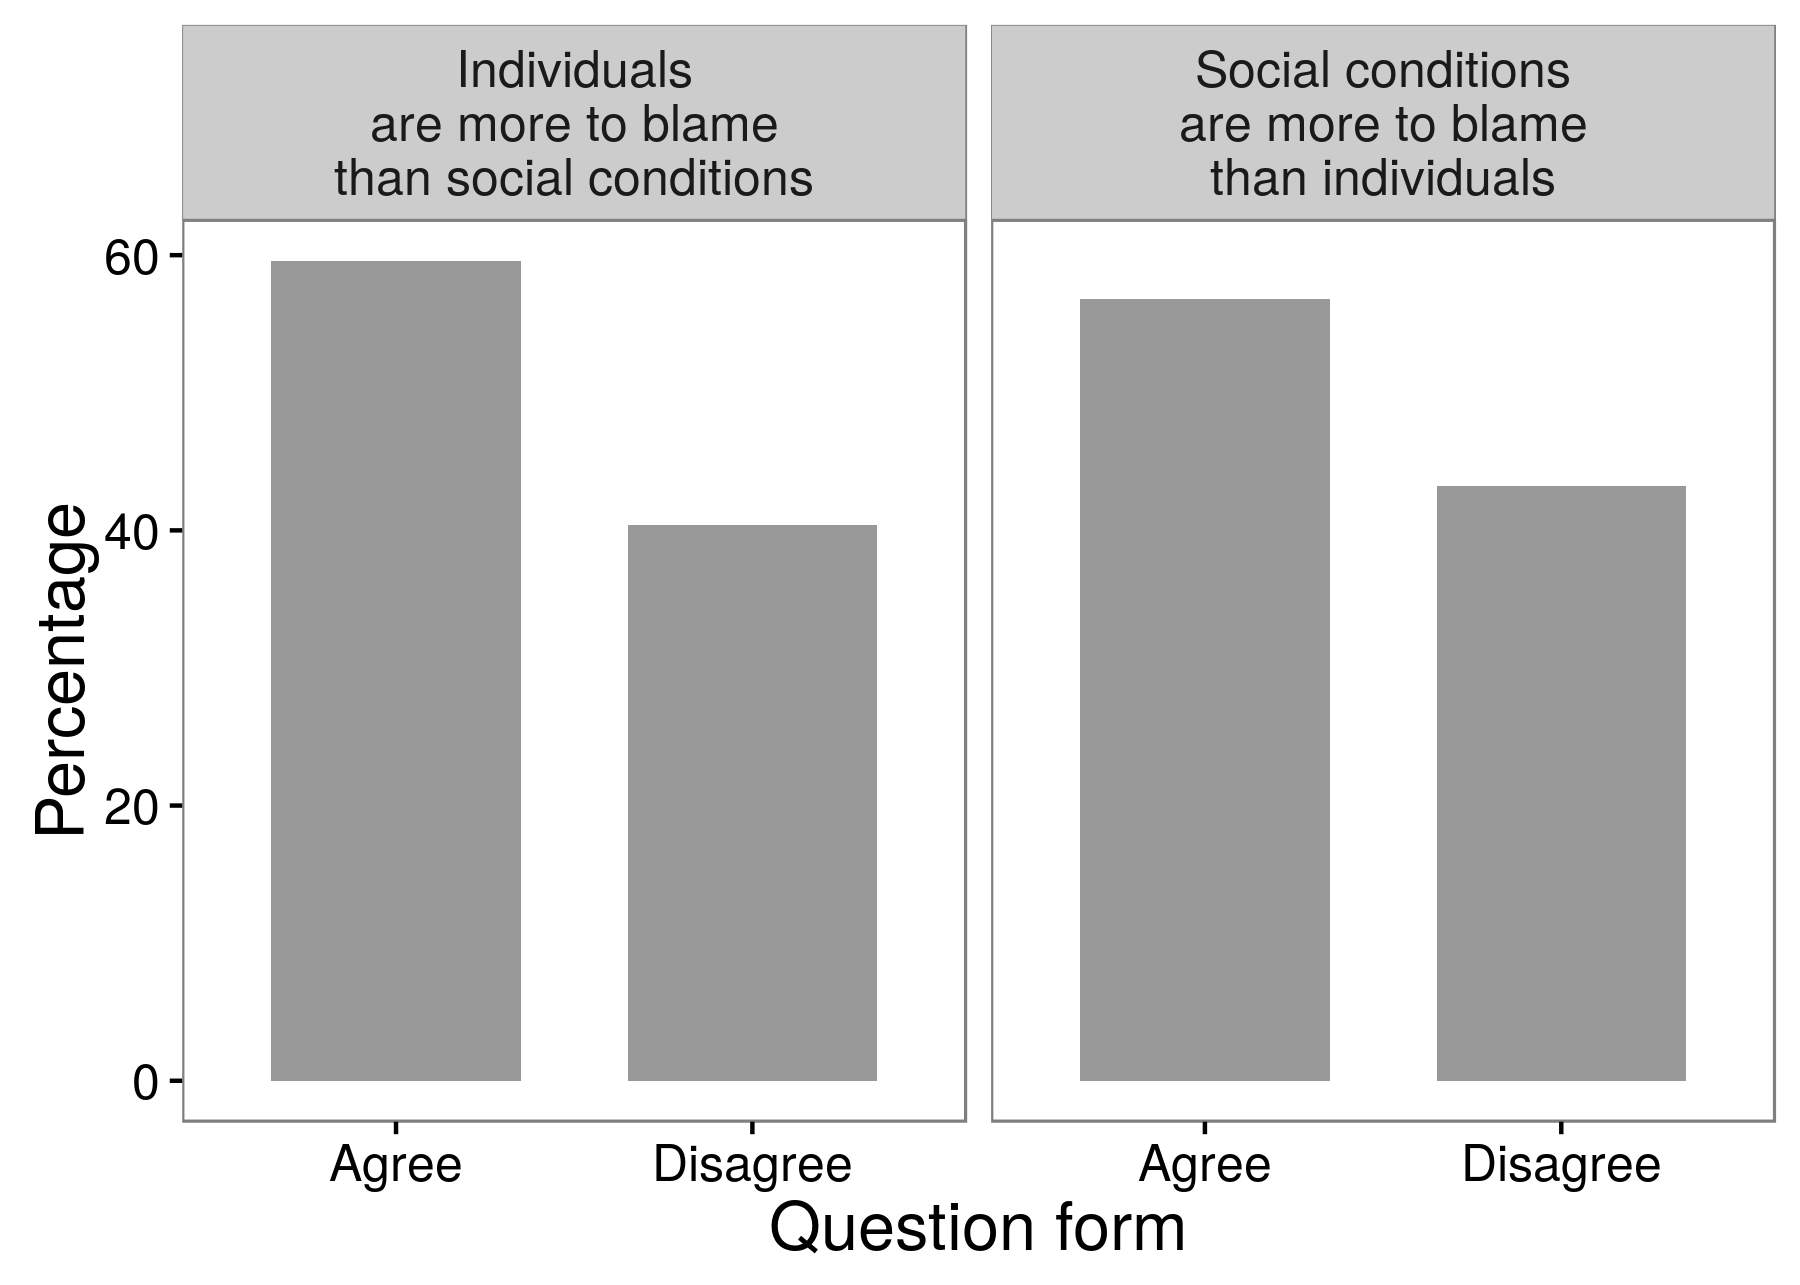 شکل 3.3: ایک سروے کے تجربے کے نتائج ظاہر کرتے ہیں کہ محققین مختلف سوالات کے مطابق حاصل کرسکتے ہیں، اس کے مطابق ان سوالوں سے وہ سوال پوچھے گئے. جواب دہندگان کی اکثریت اس بات سے اتفاق ہوا کہ افراد جرم اور لاقانونی کے لئے معاشرتی حالات سے کہیں زیادہ الزام لگاتے ہیں. اور اکثریت کے جواب دہندگان نے اس سے اتفاق کیا: اس سماجی حالات افراد سے زیادہ ذمہ دار ہیں. اسکیمان اور پریسر (1996) سے ٹیبل 8.1 کو ایڈجسٹ کیا گیا.